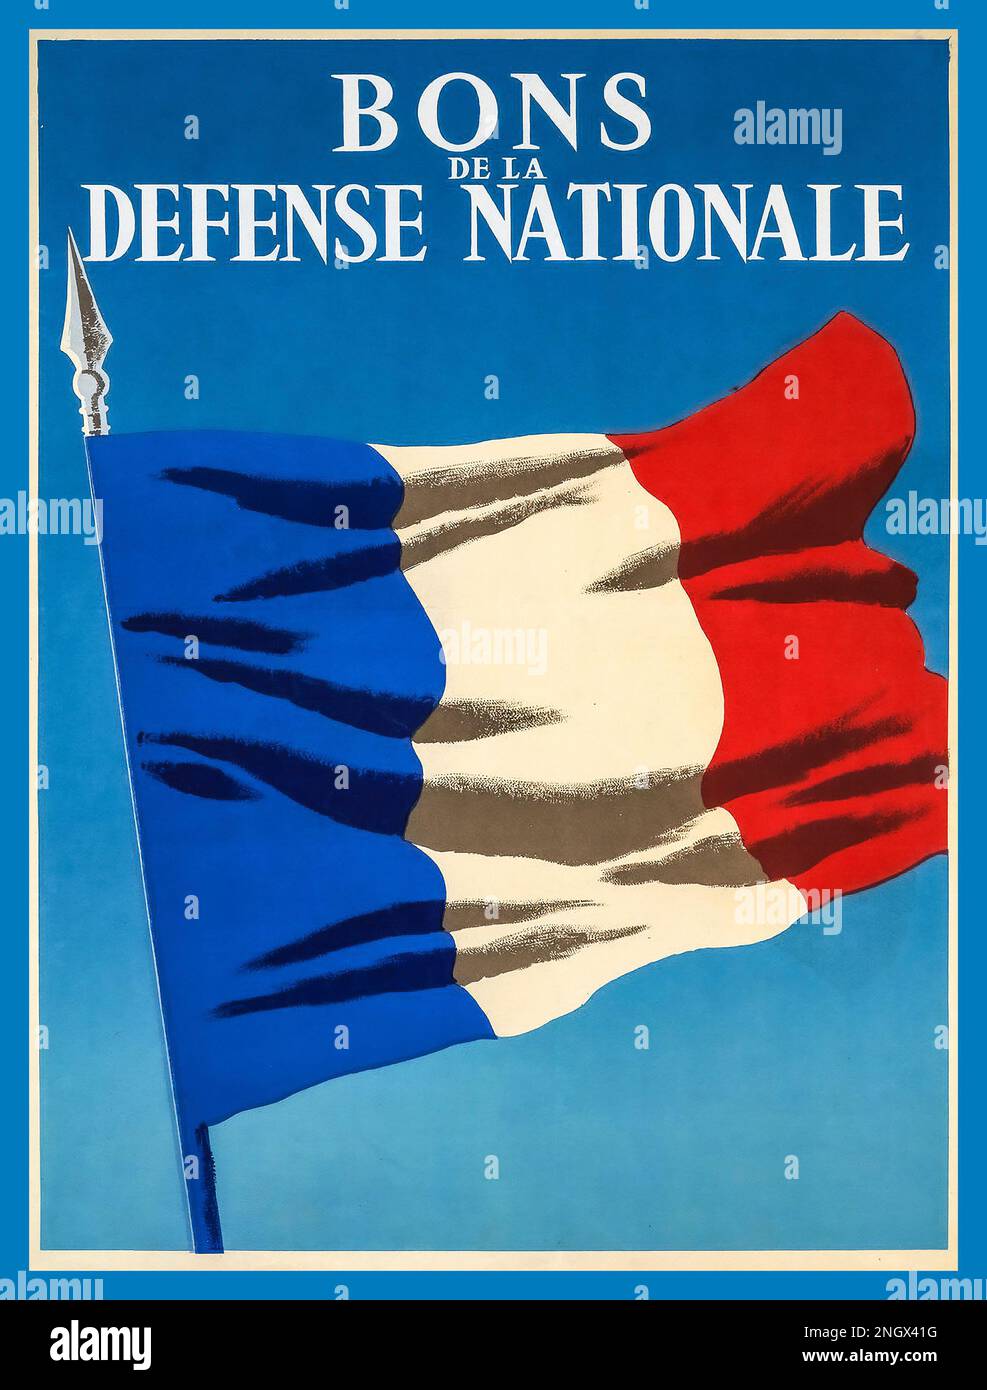 FRANCE WW2 bons de la Défense nationale FRANÇAISE Vintage WW2 affiche française 1940 affiche de l'occupation nazie ‘Bons de la défense nationale’ affiche de la France drapeau tricolore français WW2 Seconde Guerre mondiale Banque D'Images